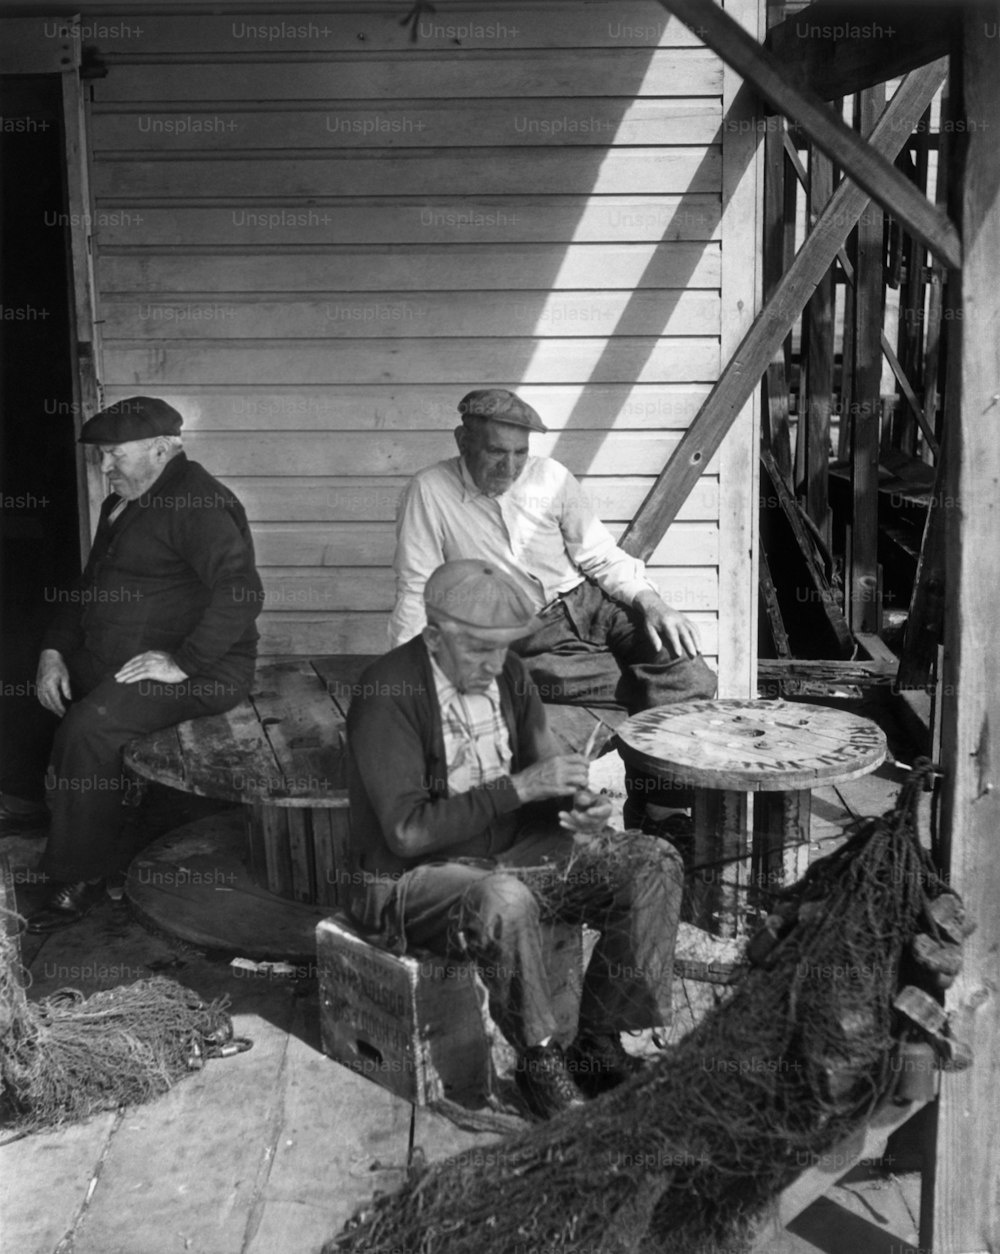 ESTADOS UNIDOS - POR VOLTA DE 1950: Homem trabalhando em redes de pesca.